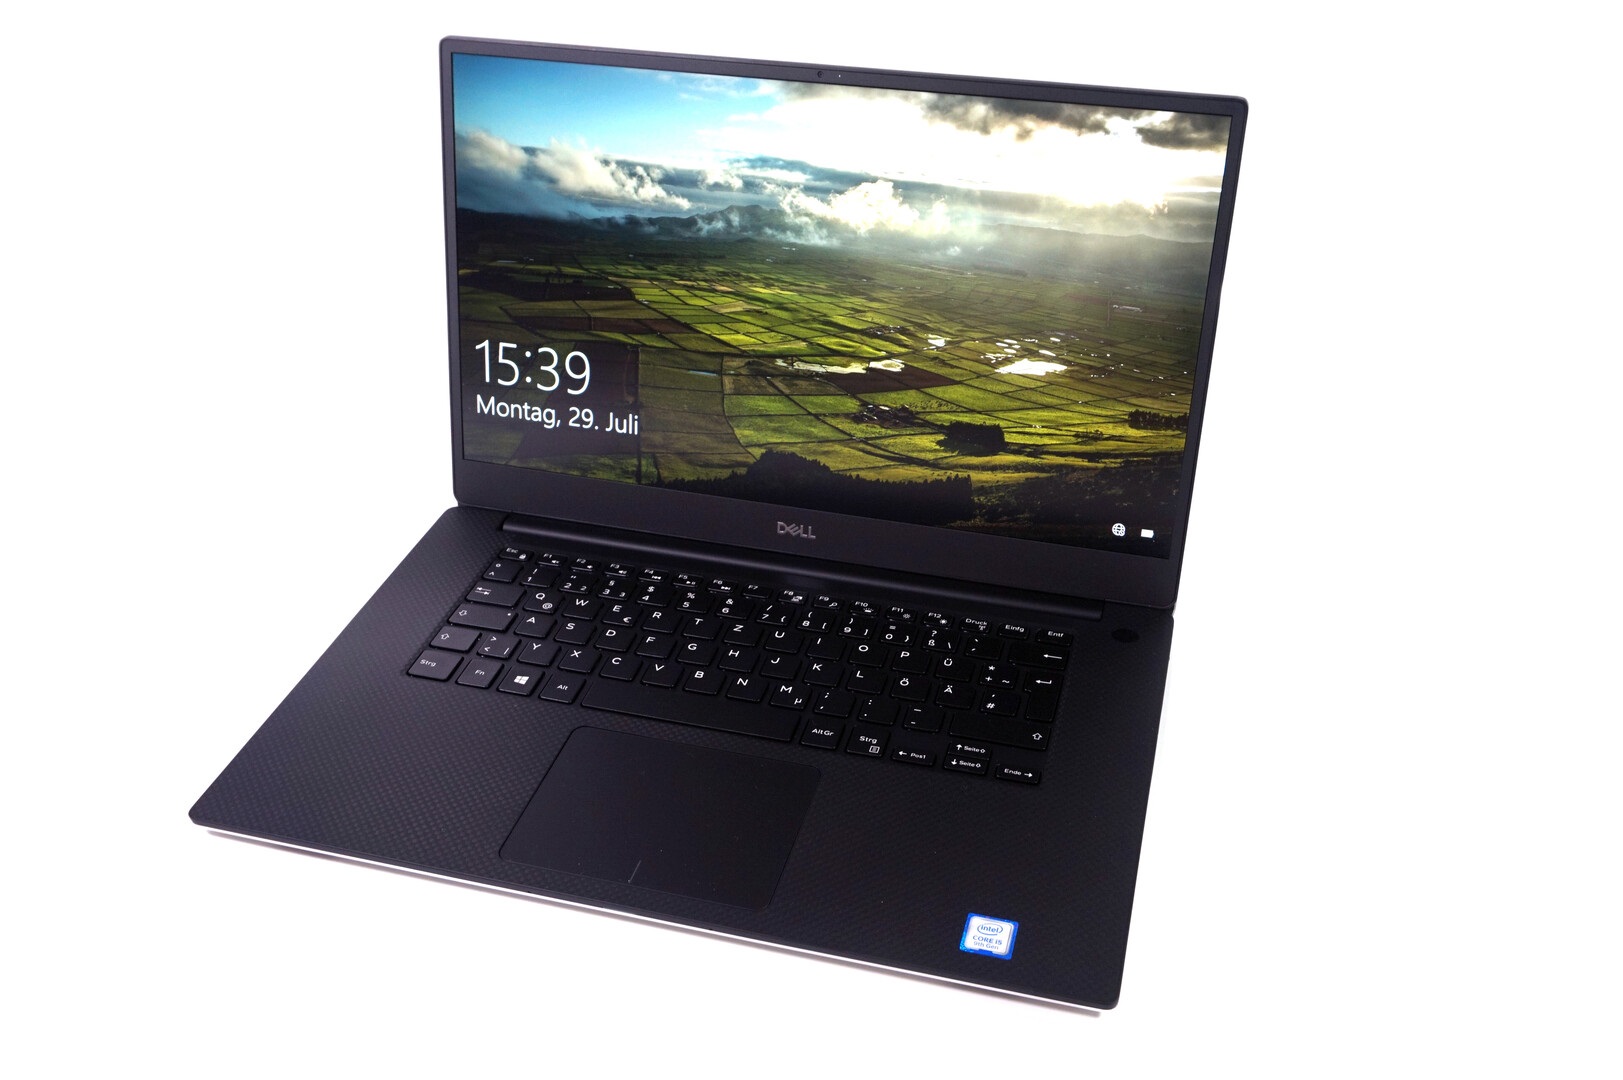 Đánh giá Dell XPS 15 7590: Multimedia Notebook đáng mua !, trang web tư vấn về laptop